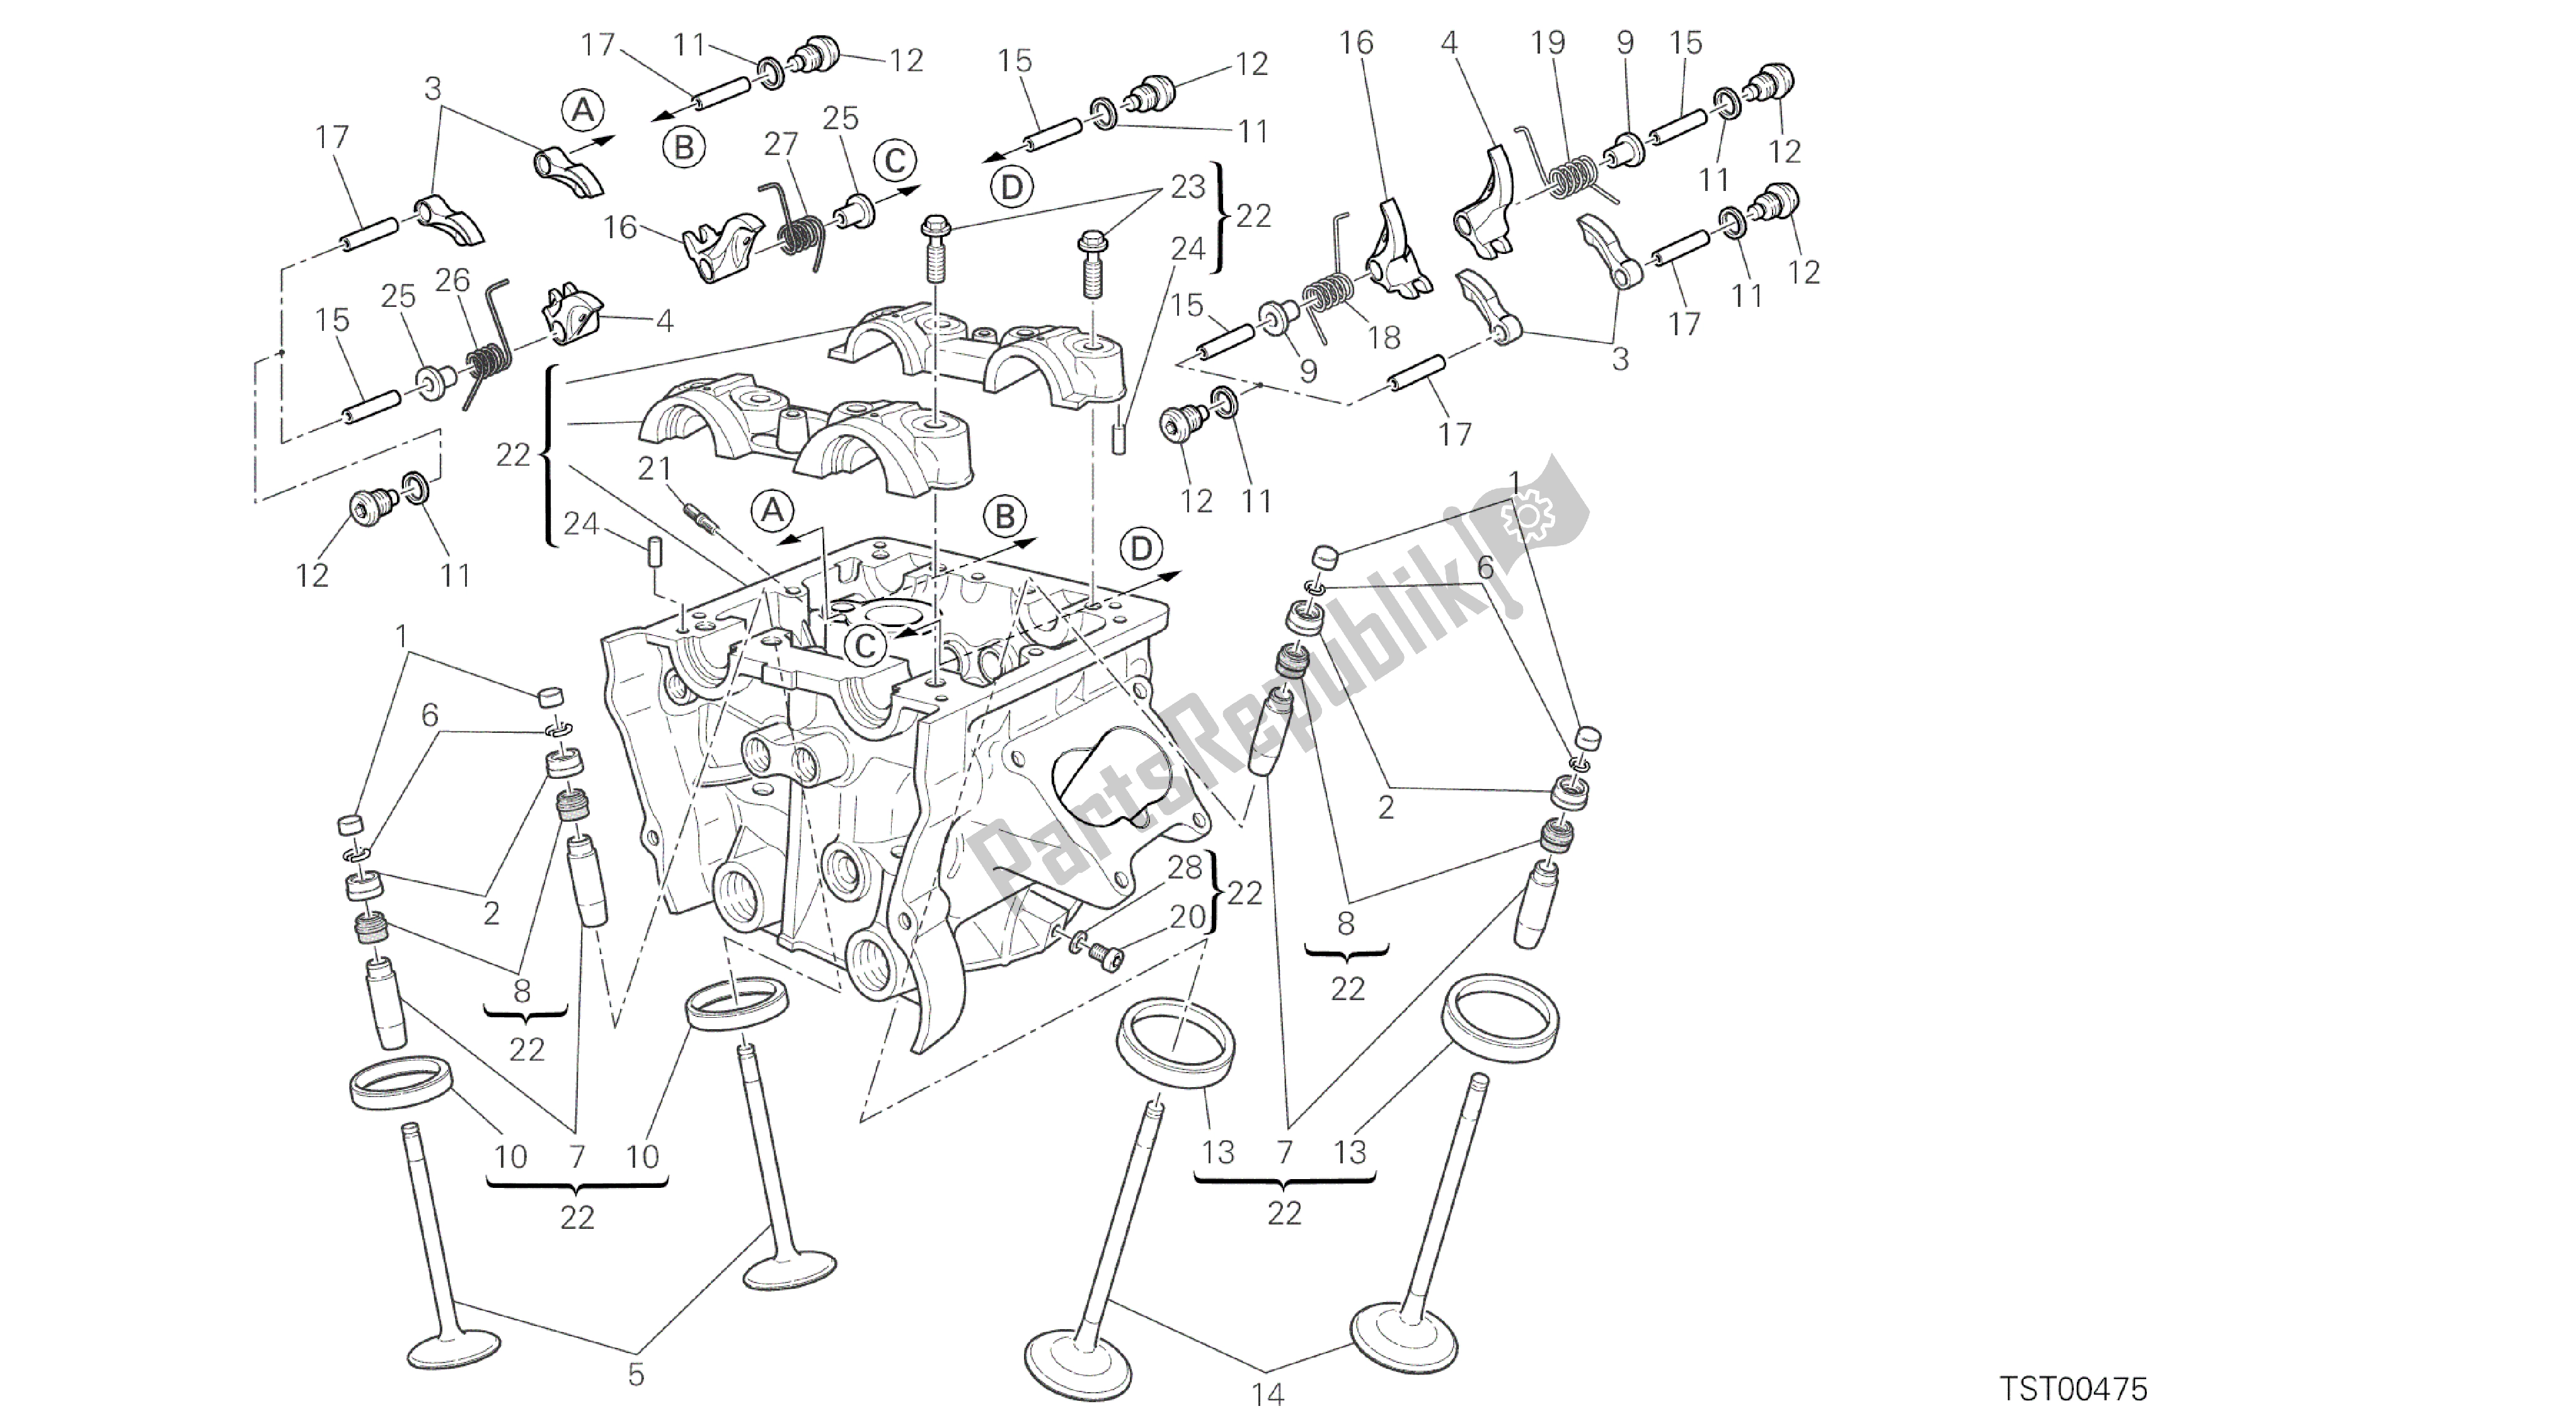 Toutes les pièces pour le Dessin 014 - Culasse Verticale [mod: Ms1200pp; Xst: Aus, Eur, Fra, Jap, Tha] Group Engine du Ducati Multistrada S Pikes Peak 1200 2014